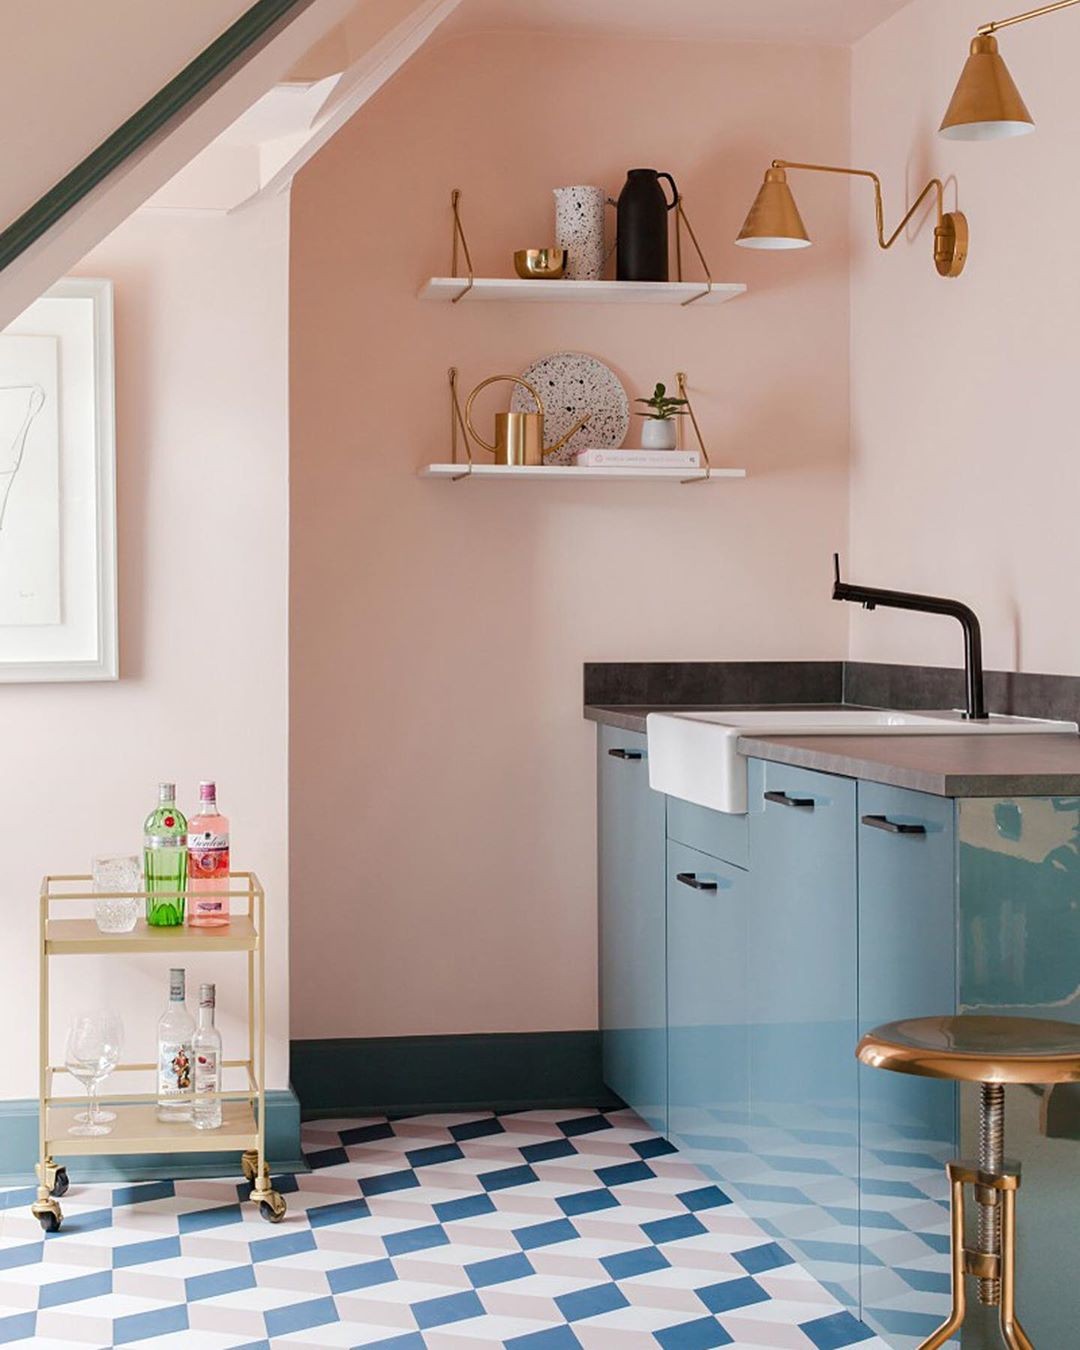 Décor do dia: cozinha rosa com armário embutido e piso colorido - Casa  Vogue | Décor do dia